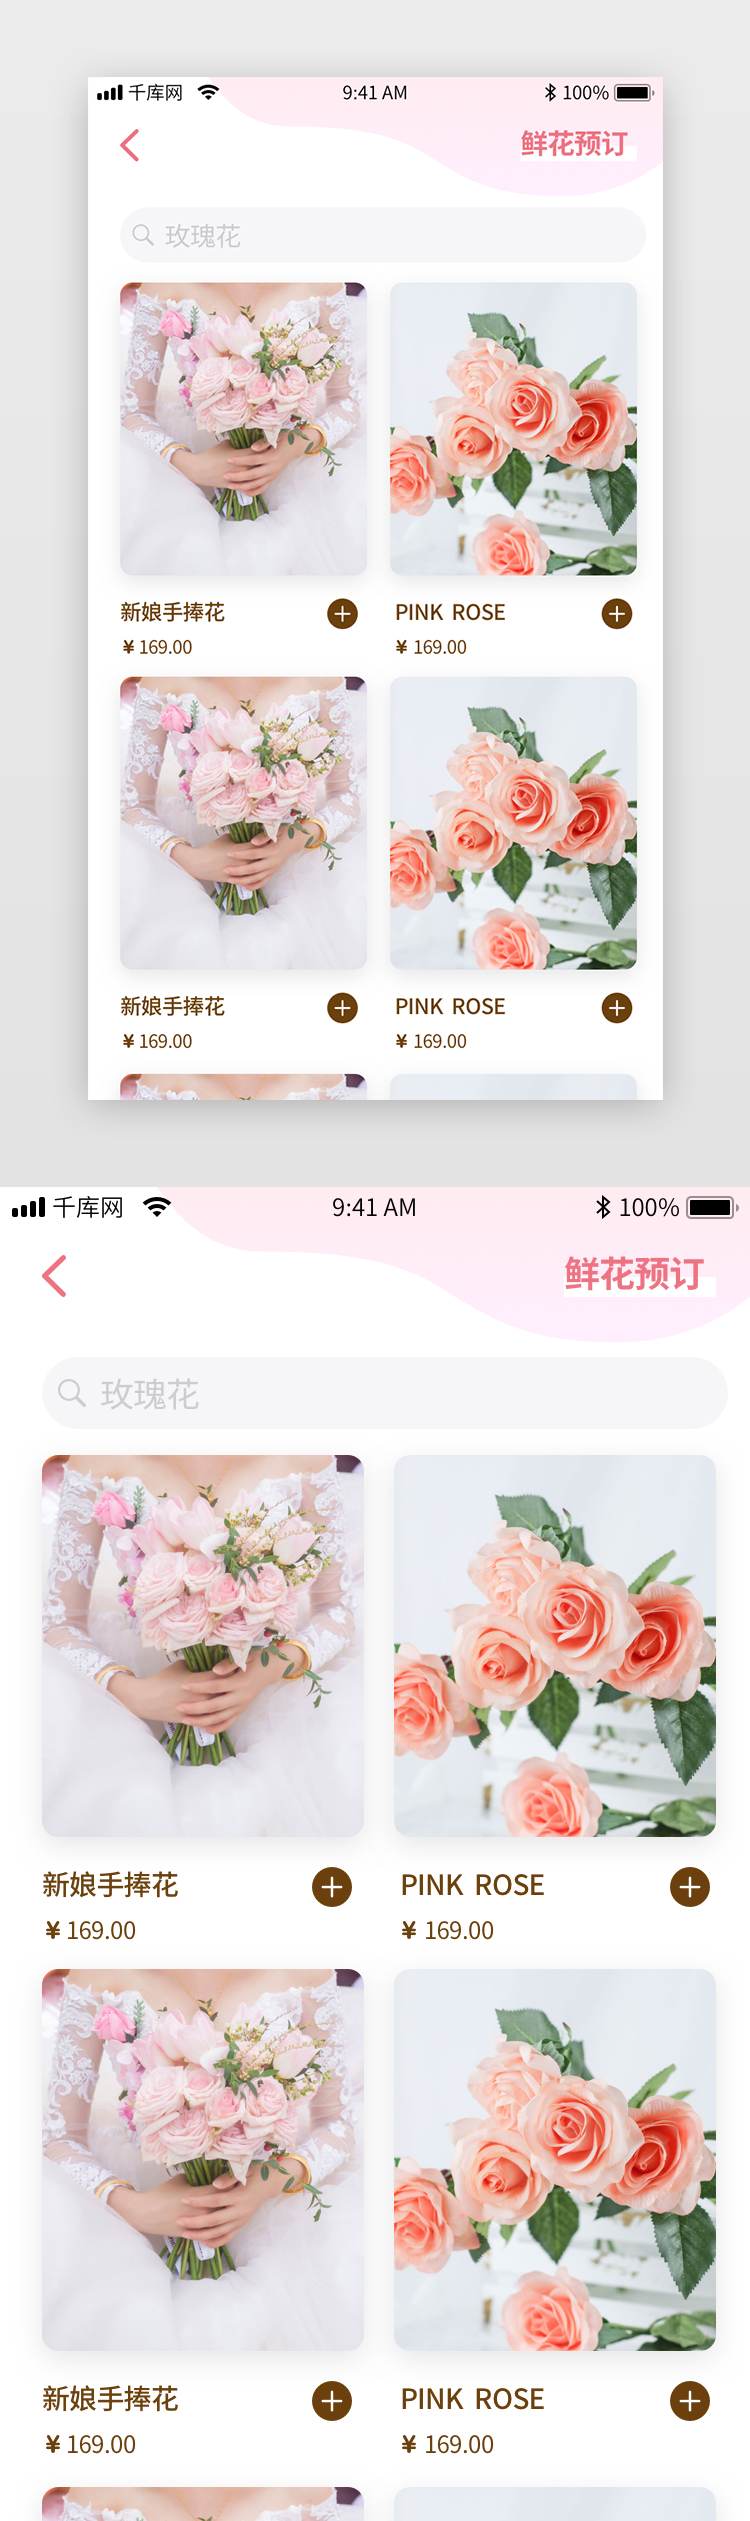 简约唯美婚庆鲜花预定app列表页图片